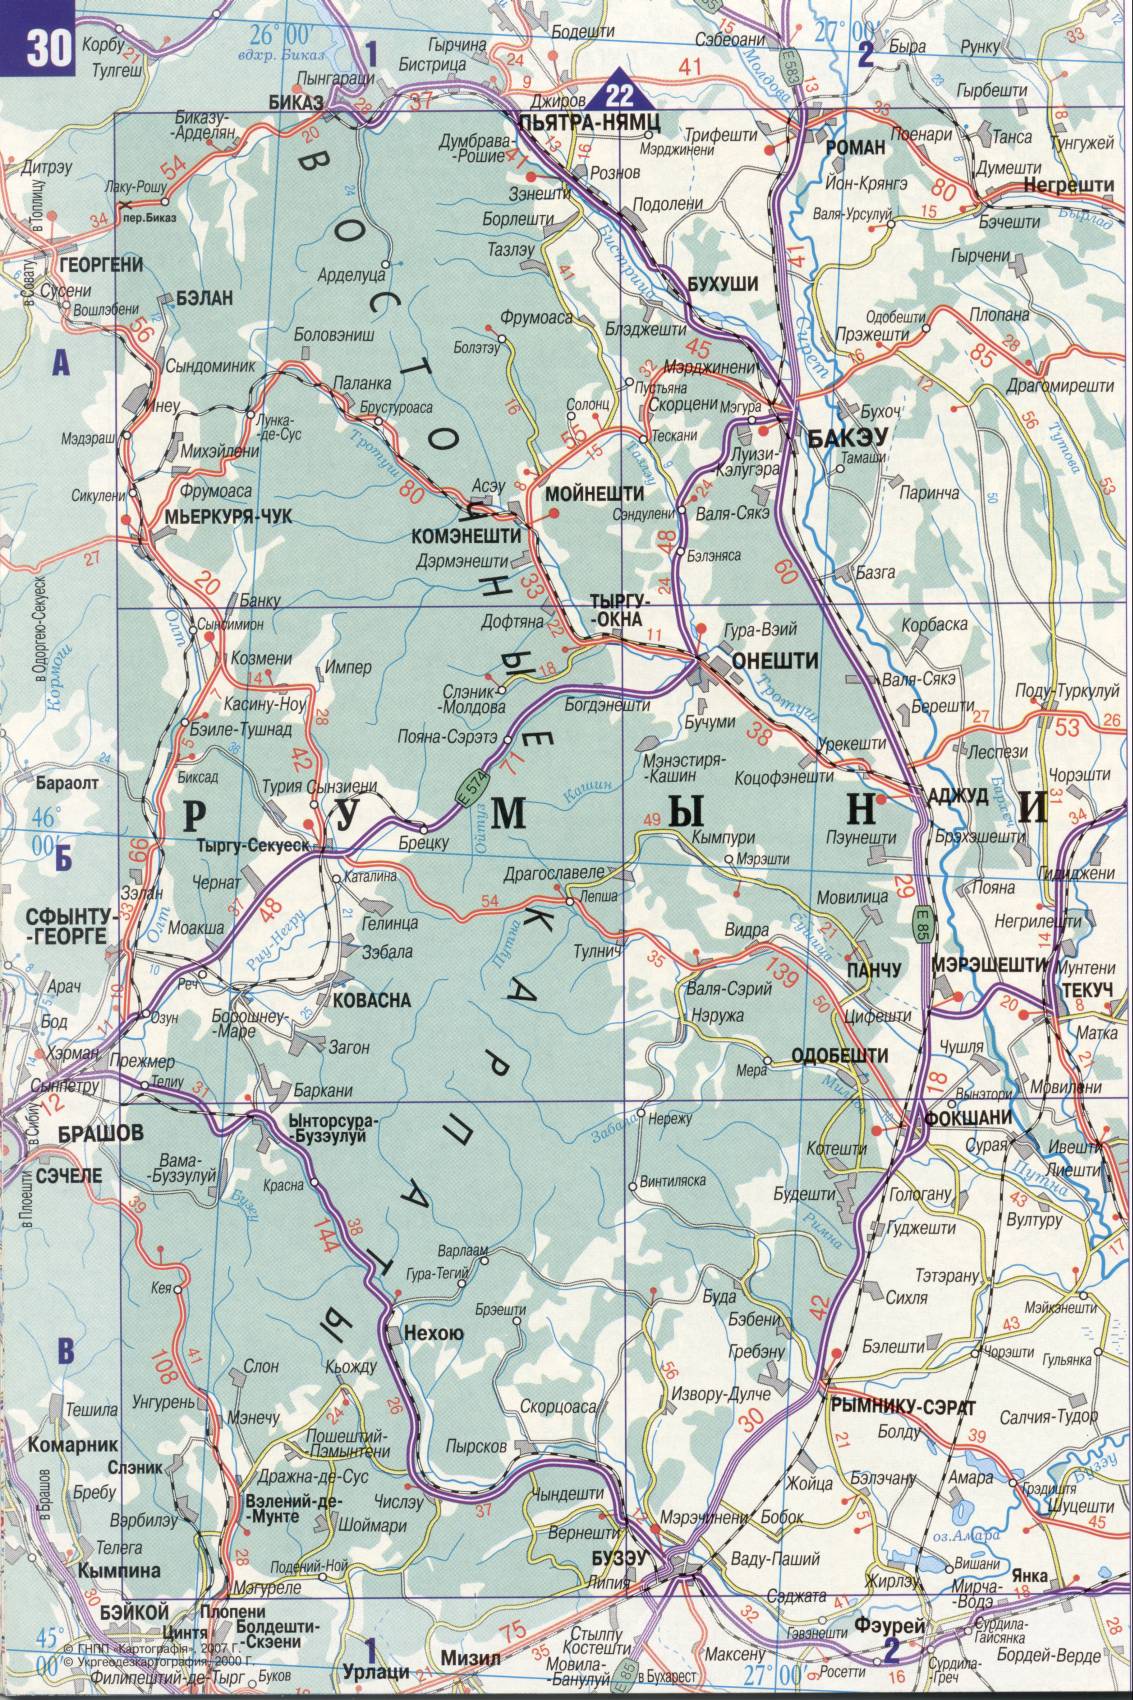 Карта Украины. Подробная карта дорог Украина из автомобильног атласа. скачать бесплатно, C3